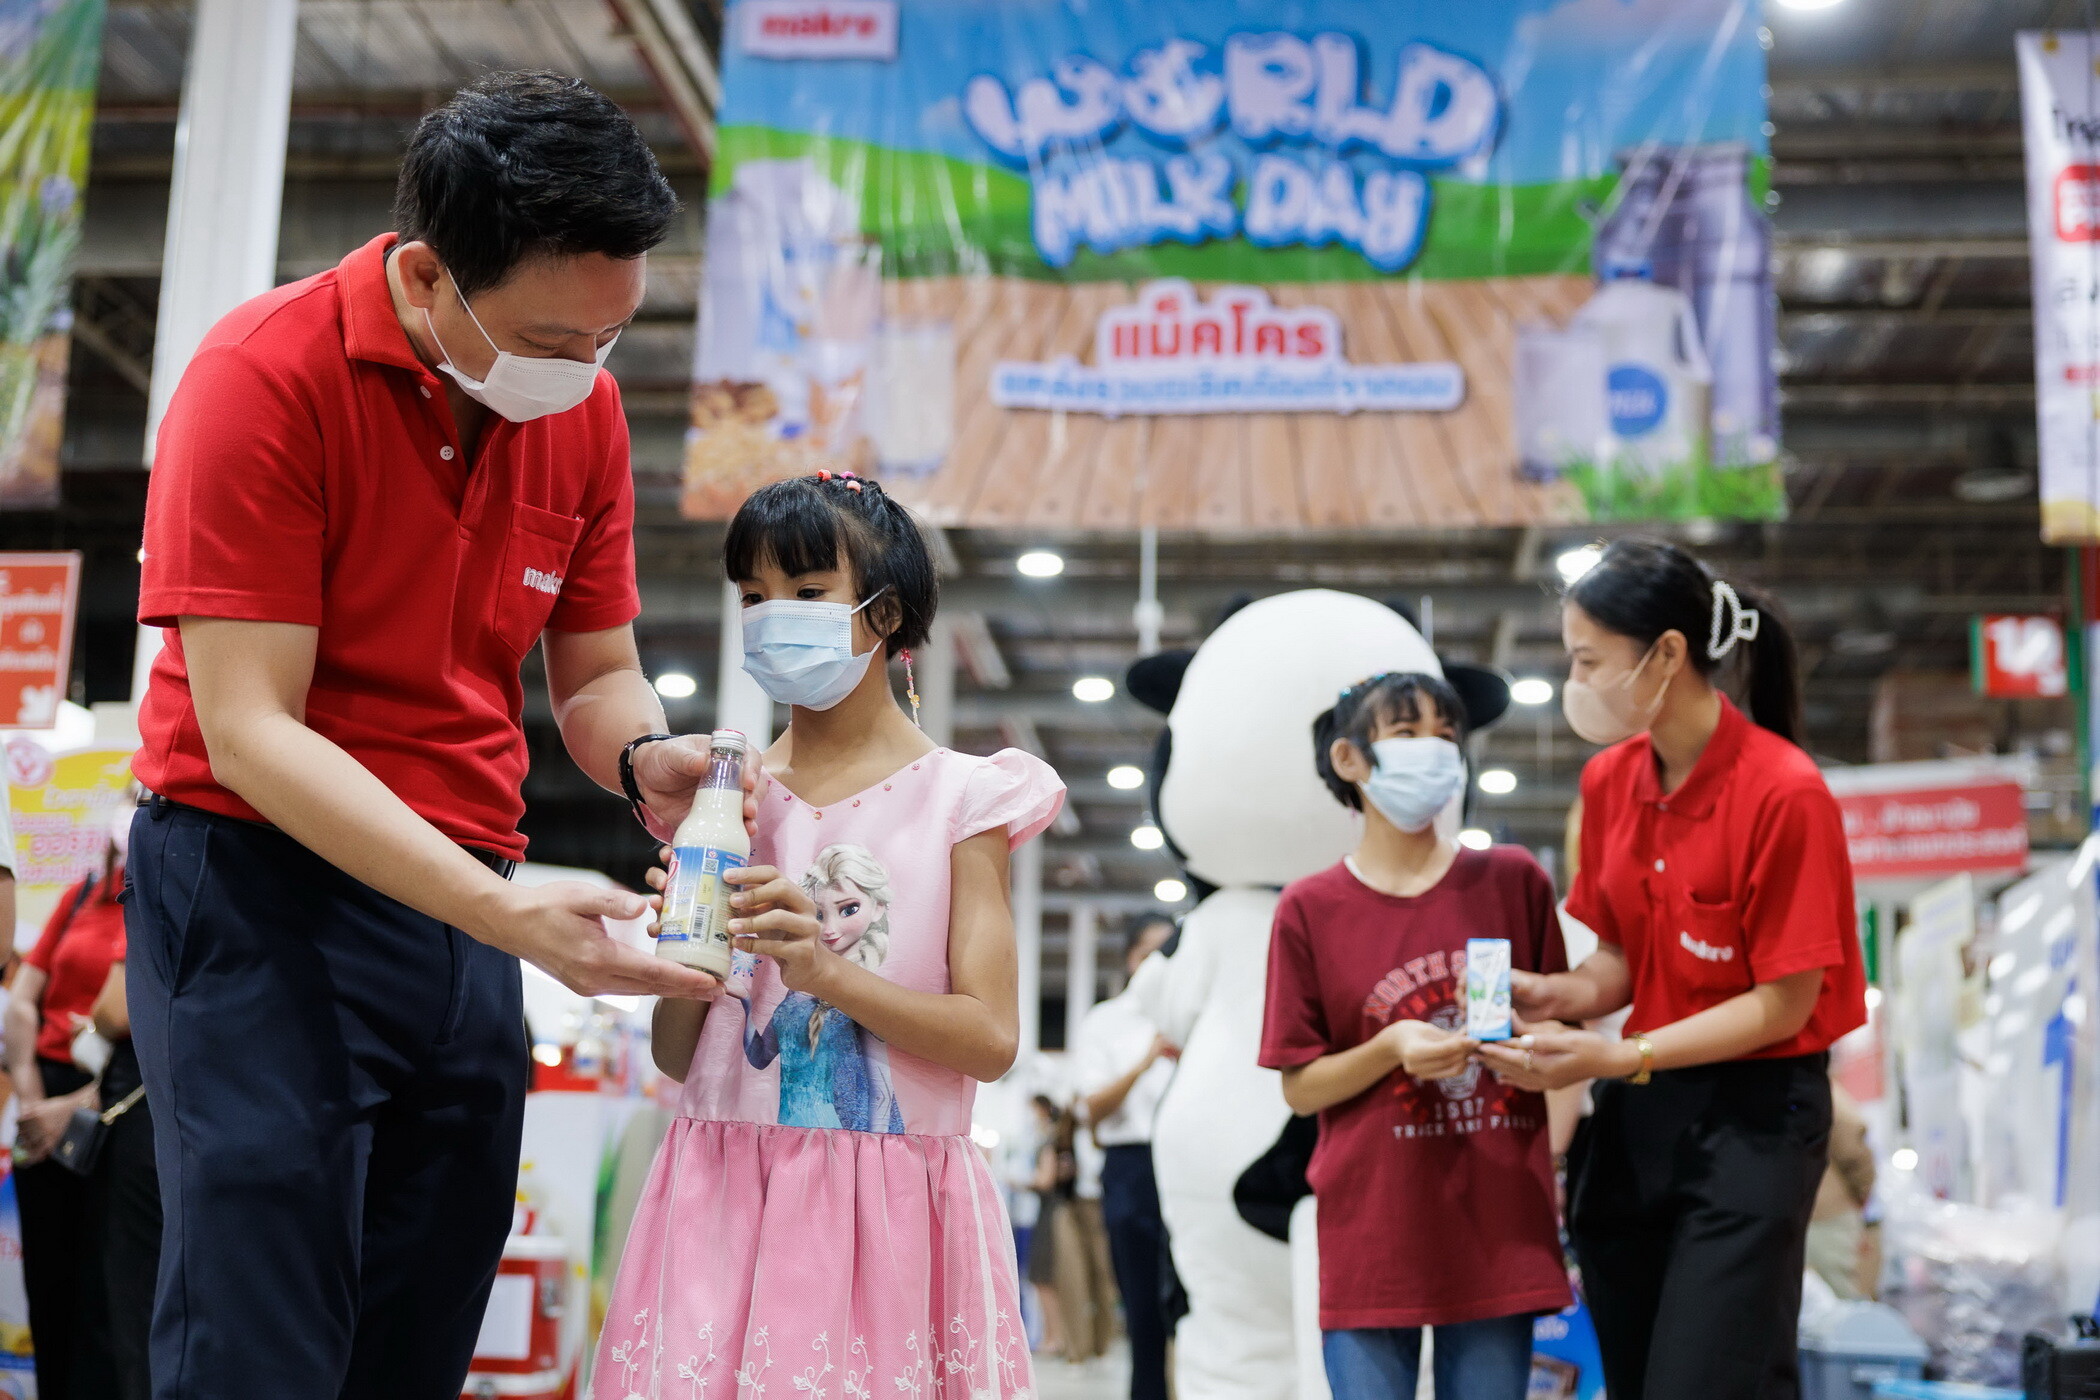 แม็คโคร จับมือ กรมปศุสัตว์ และพันธมิตรธุรกิจ มอบผลิตภัณฑ์นมกว่า 20,000 กล่อง แก่เด็กพิการ หนุนคนไทยดื่มนมเพื่อสุขภาพ รับ "World Milk Day"